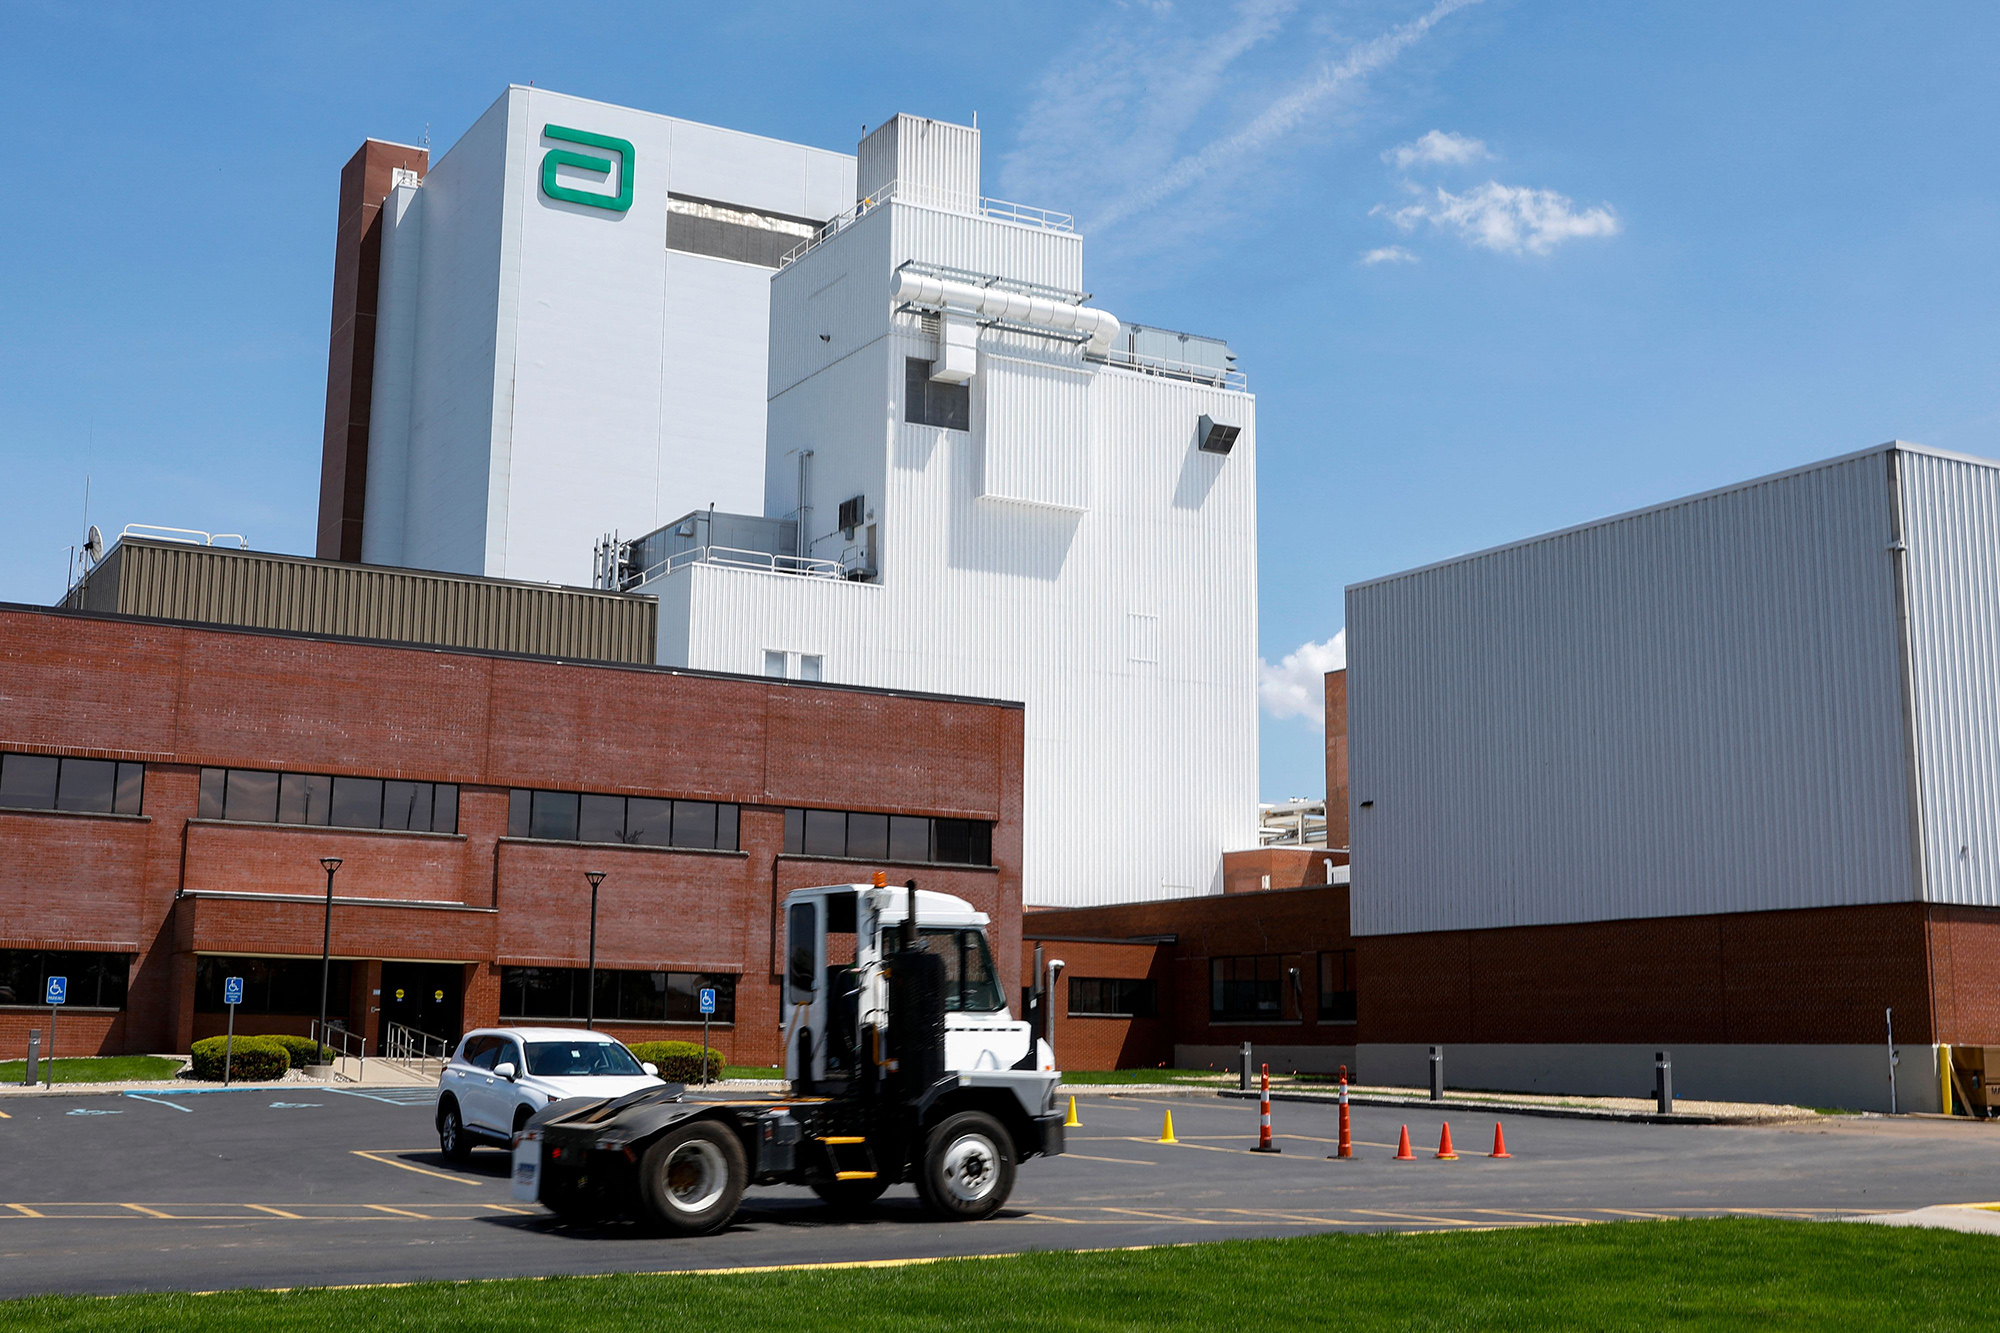 Nhà máy của Abbott tại Michigan phải ngừng hoạt động suốt nhiều tháng để phục vụ điều tra, làm căng thẳng nguồn cung sữa trên toàn quốc